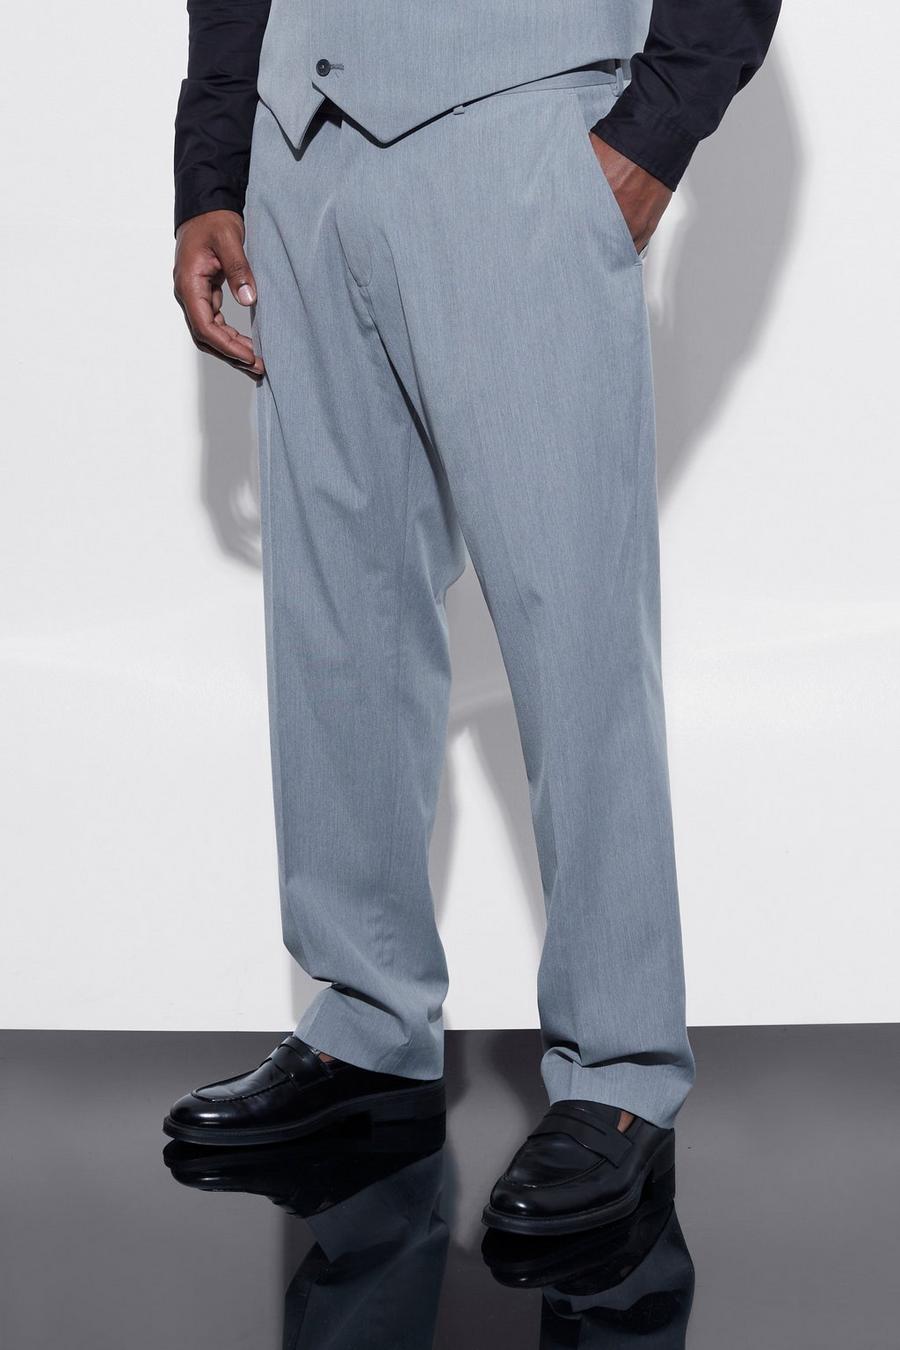 אפור grigio מכנסי חליפה בגזרה צרה, מידות גדולות